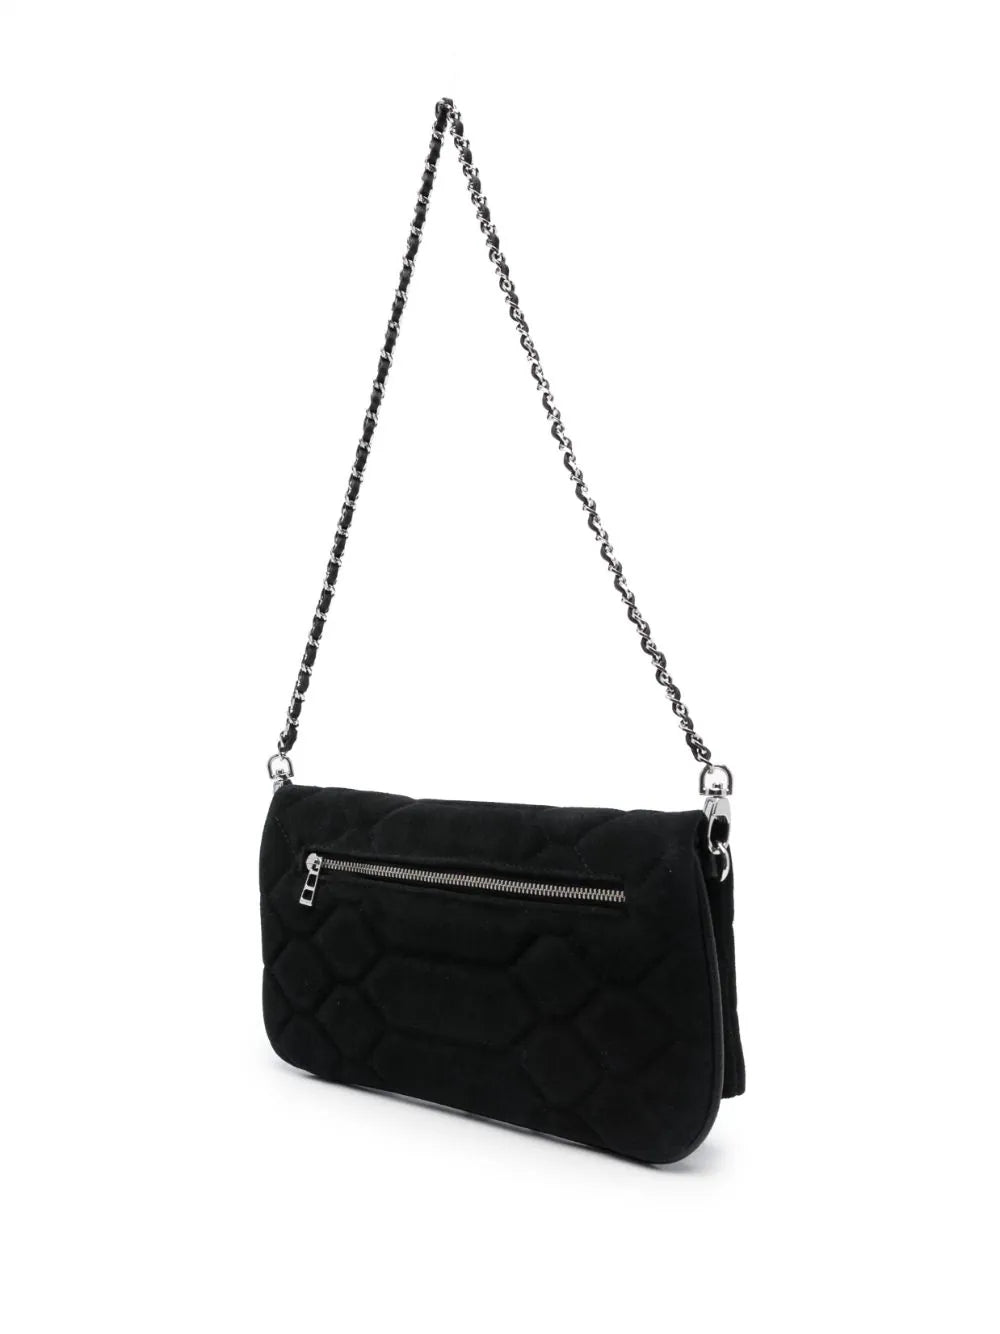 ROCK XL MAT SCALE SUEDE handbag, black